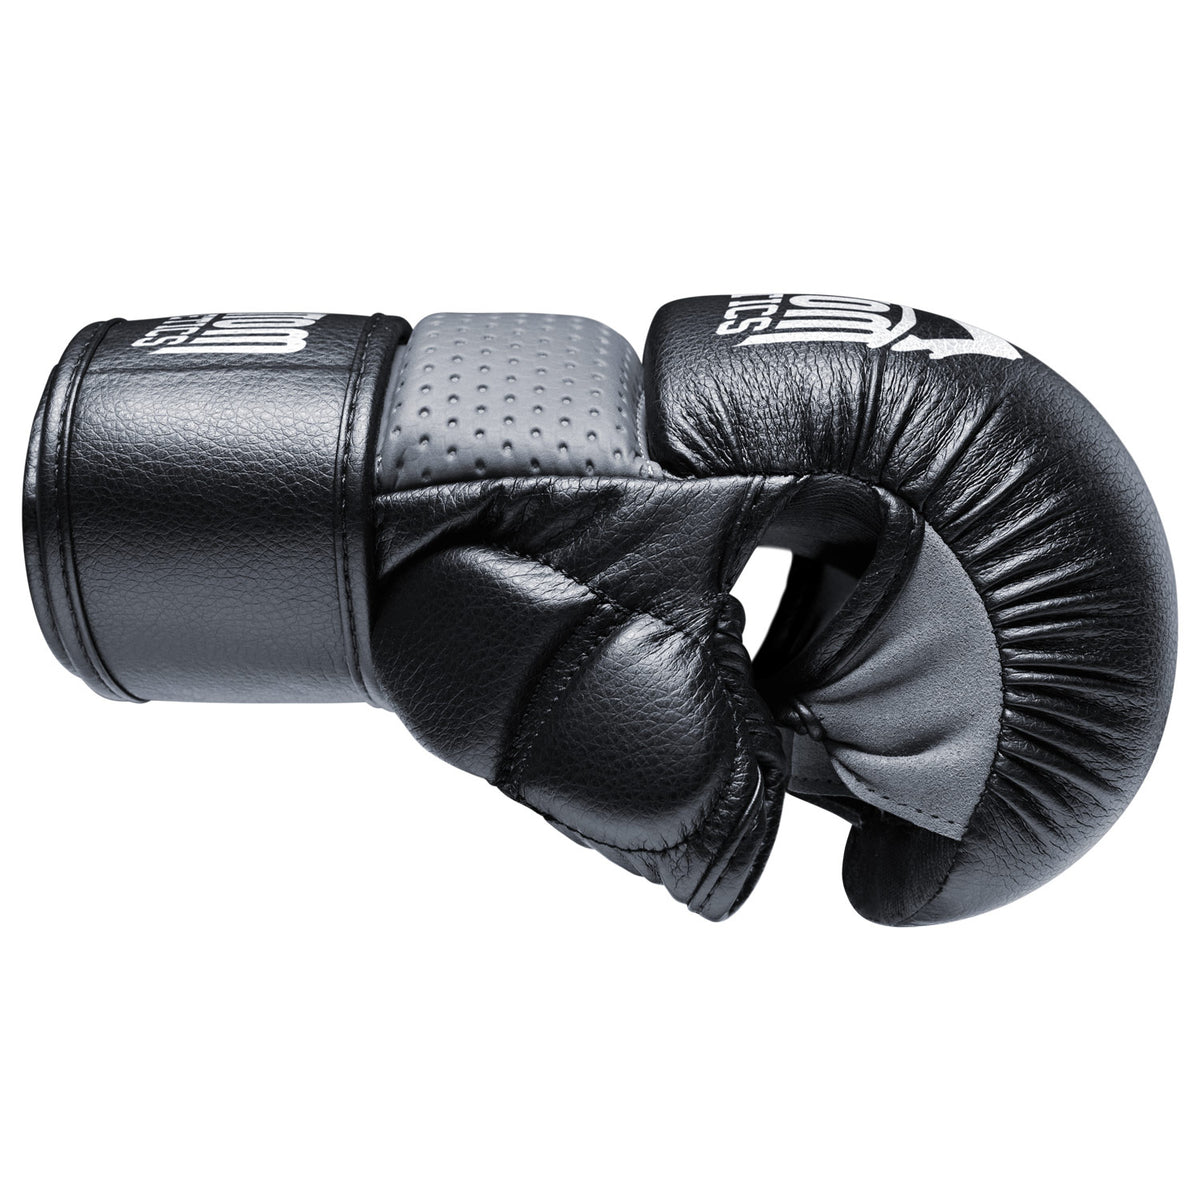 Rundum Schutz im Kampfsport Training mit dem Phantom RIOT MMA Sparring Handschuh 